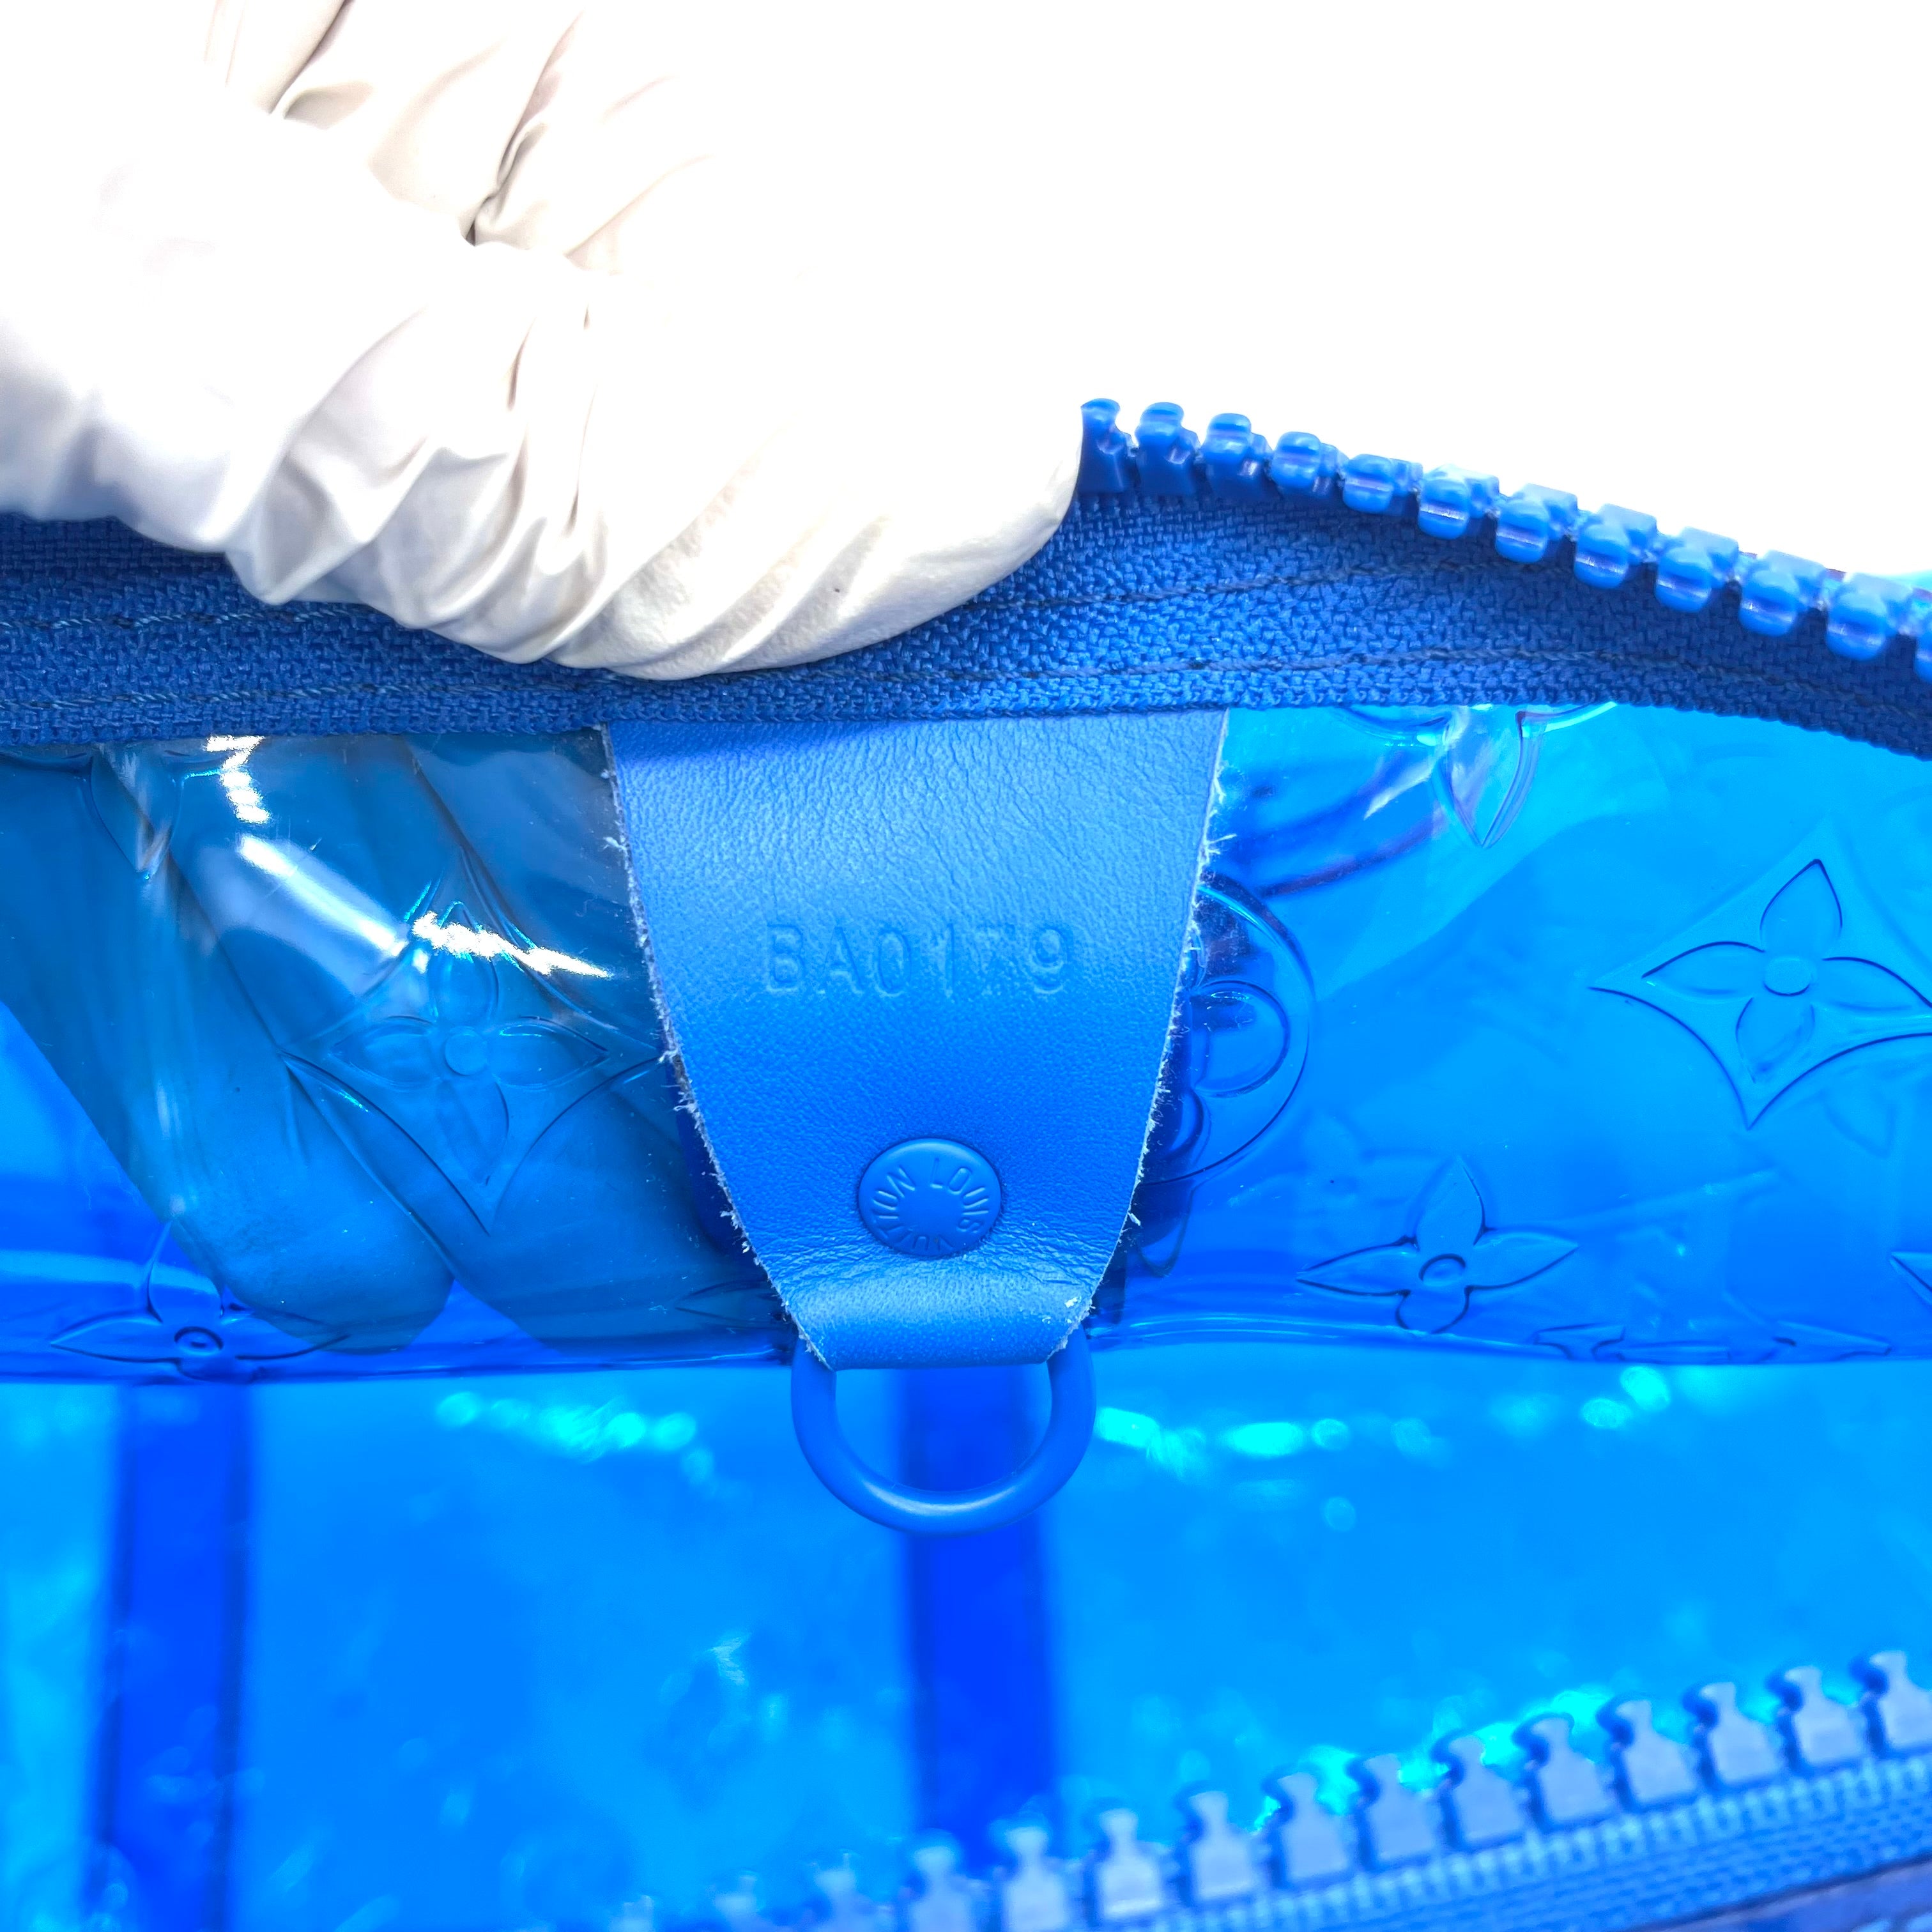 Louis Vuitton Virgil Abloh Transparent Blue Monogram Keepall